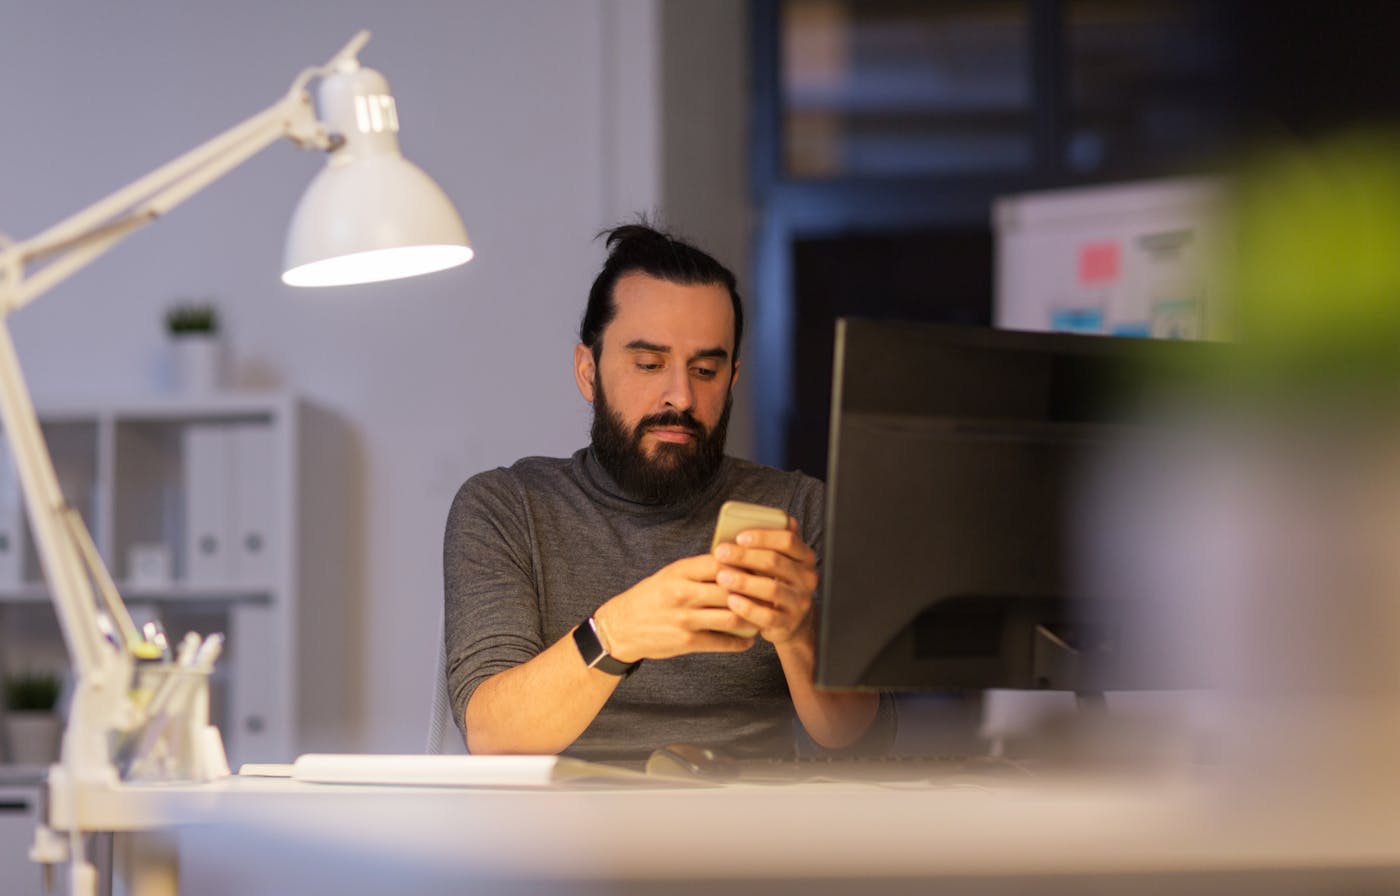 Hipper junger Mann sitzt gestresst vor PC und Smartphone